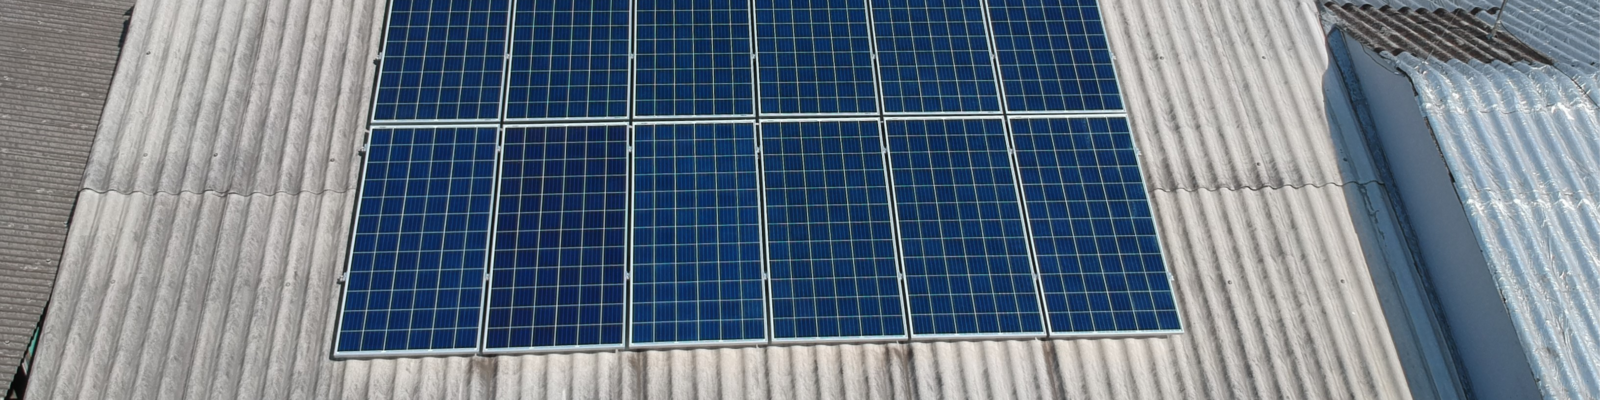 Instalação de energia fotovoltaica em Canoas - Elysia energia solar RS